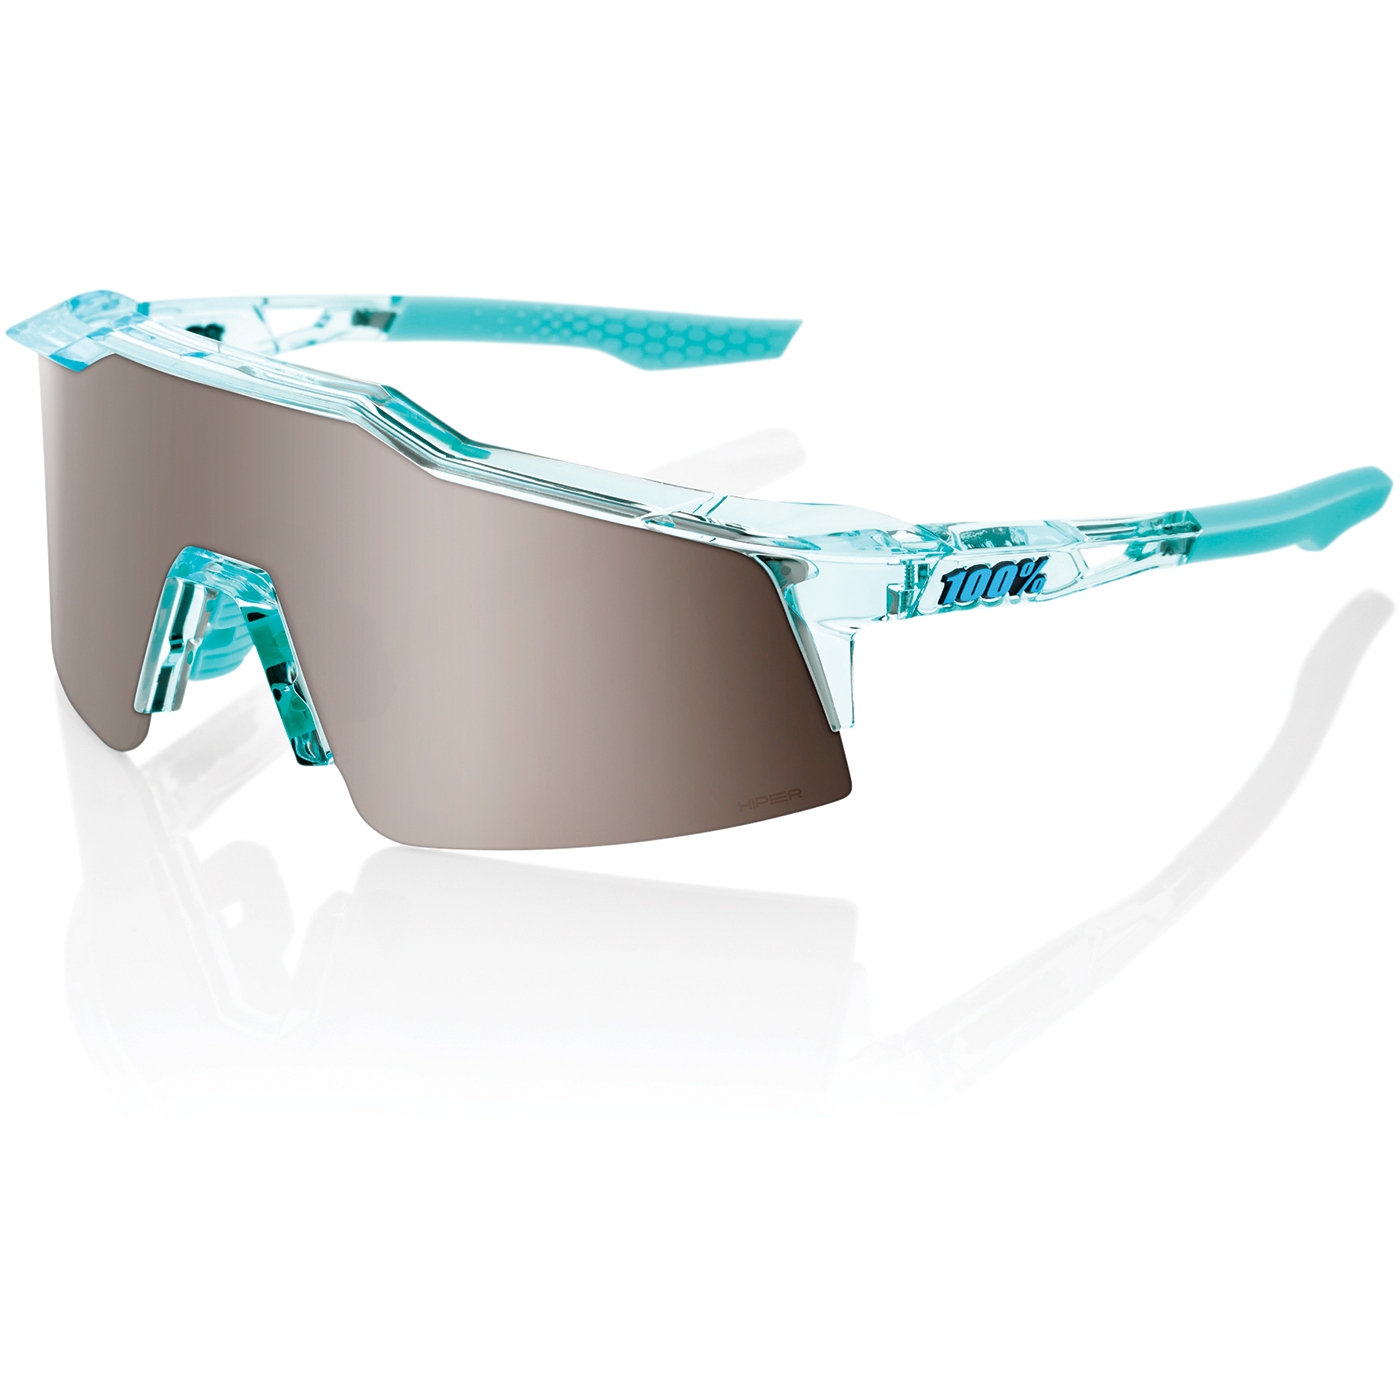 Produktbild von 100% Speedcraft SL Brille - HiPER Mirror Lens - Polished Translucent Mint / Silver + Clear